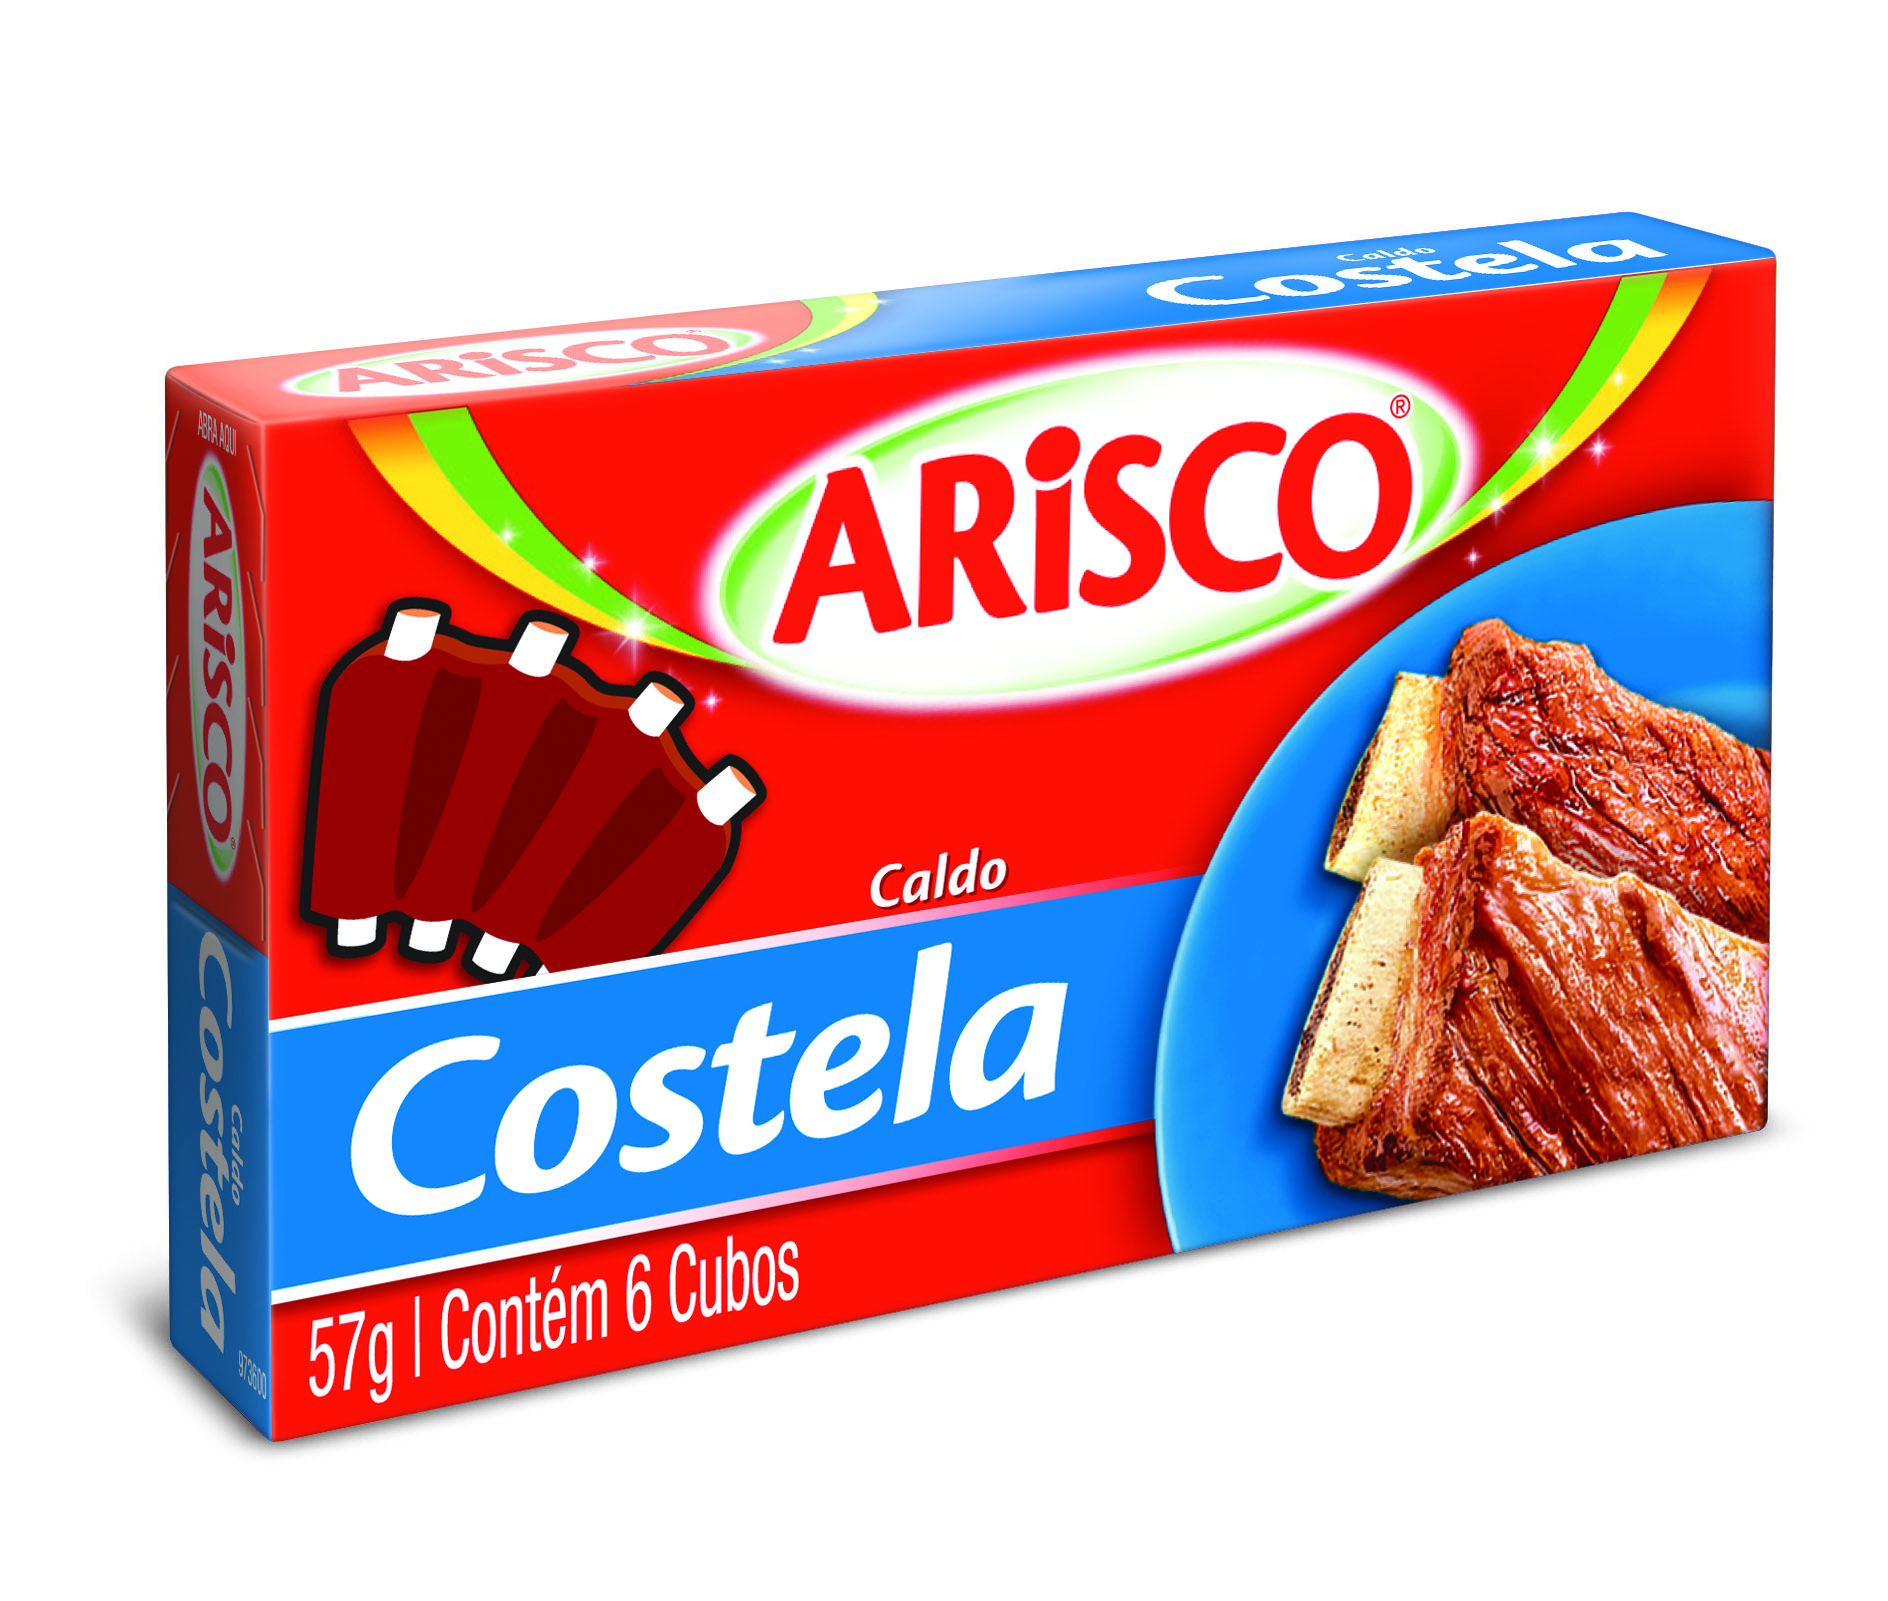 7891150024335 - CALDO ARISCO COSTELA 6 CUBOS 57G